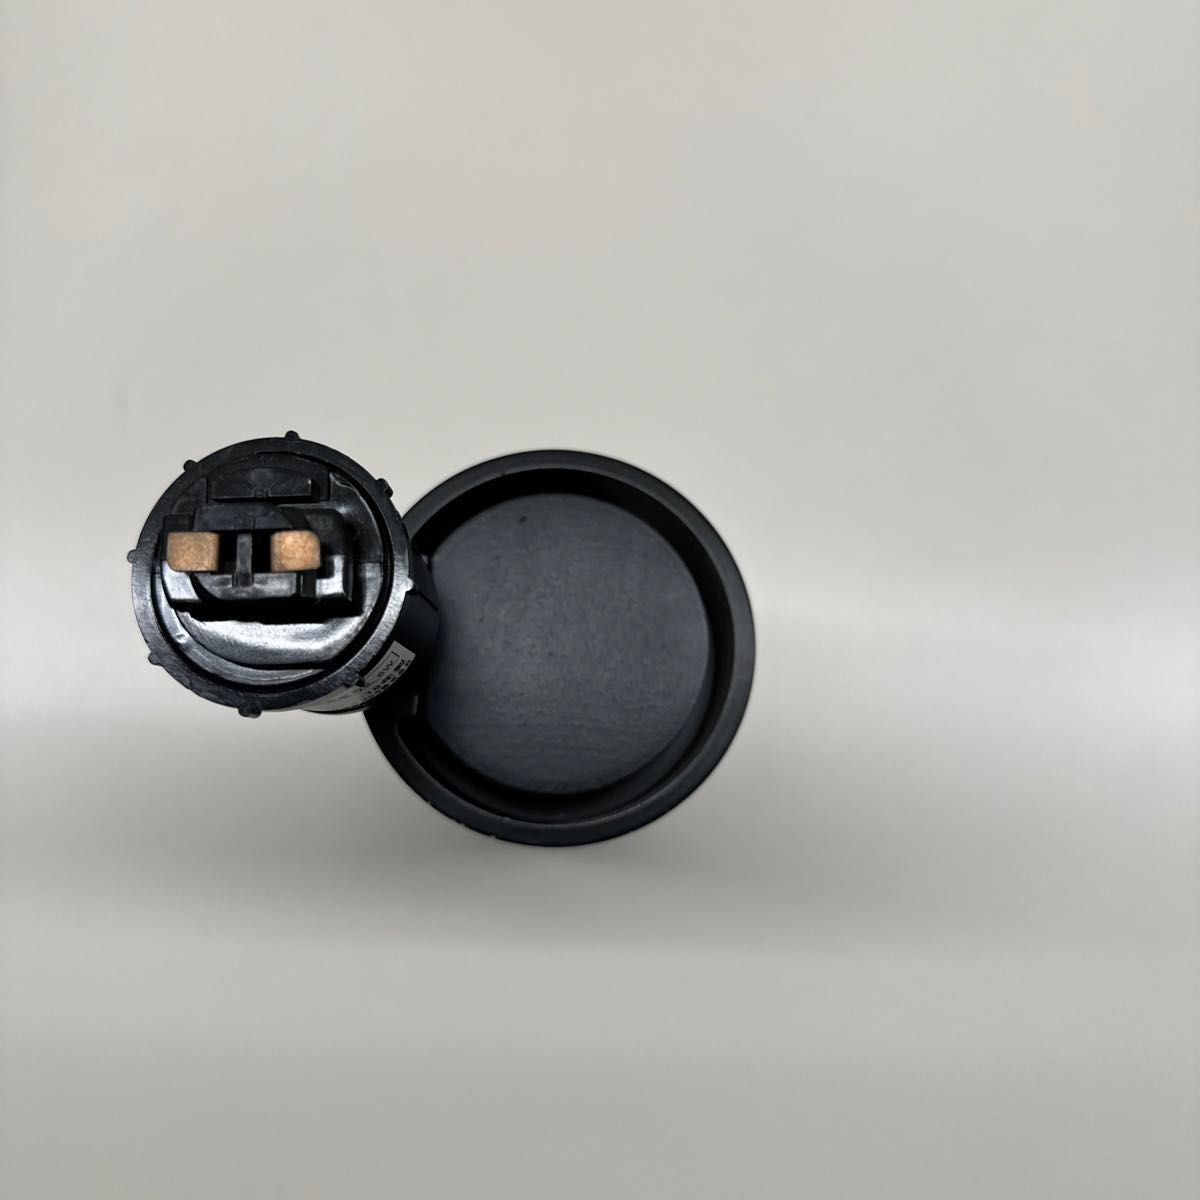 OS256482R オーデリック LEDスポットライト 白熱球60W相当 電球色 ワイド配光 連続調光 ブラック レール取付専用